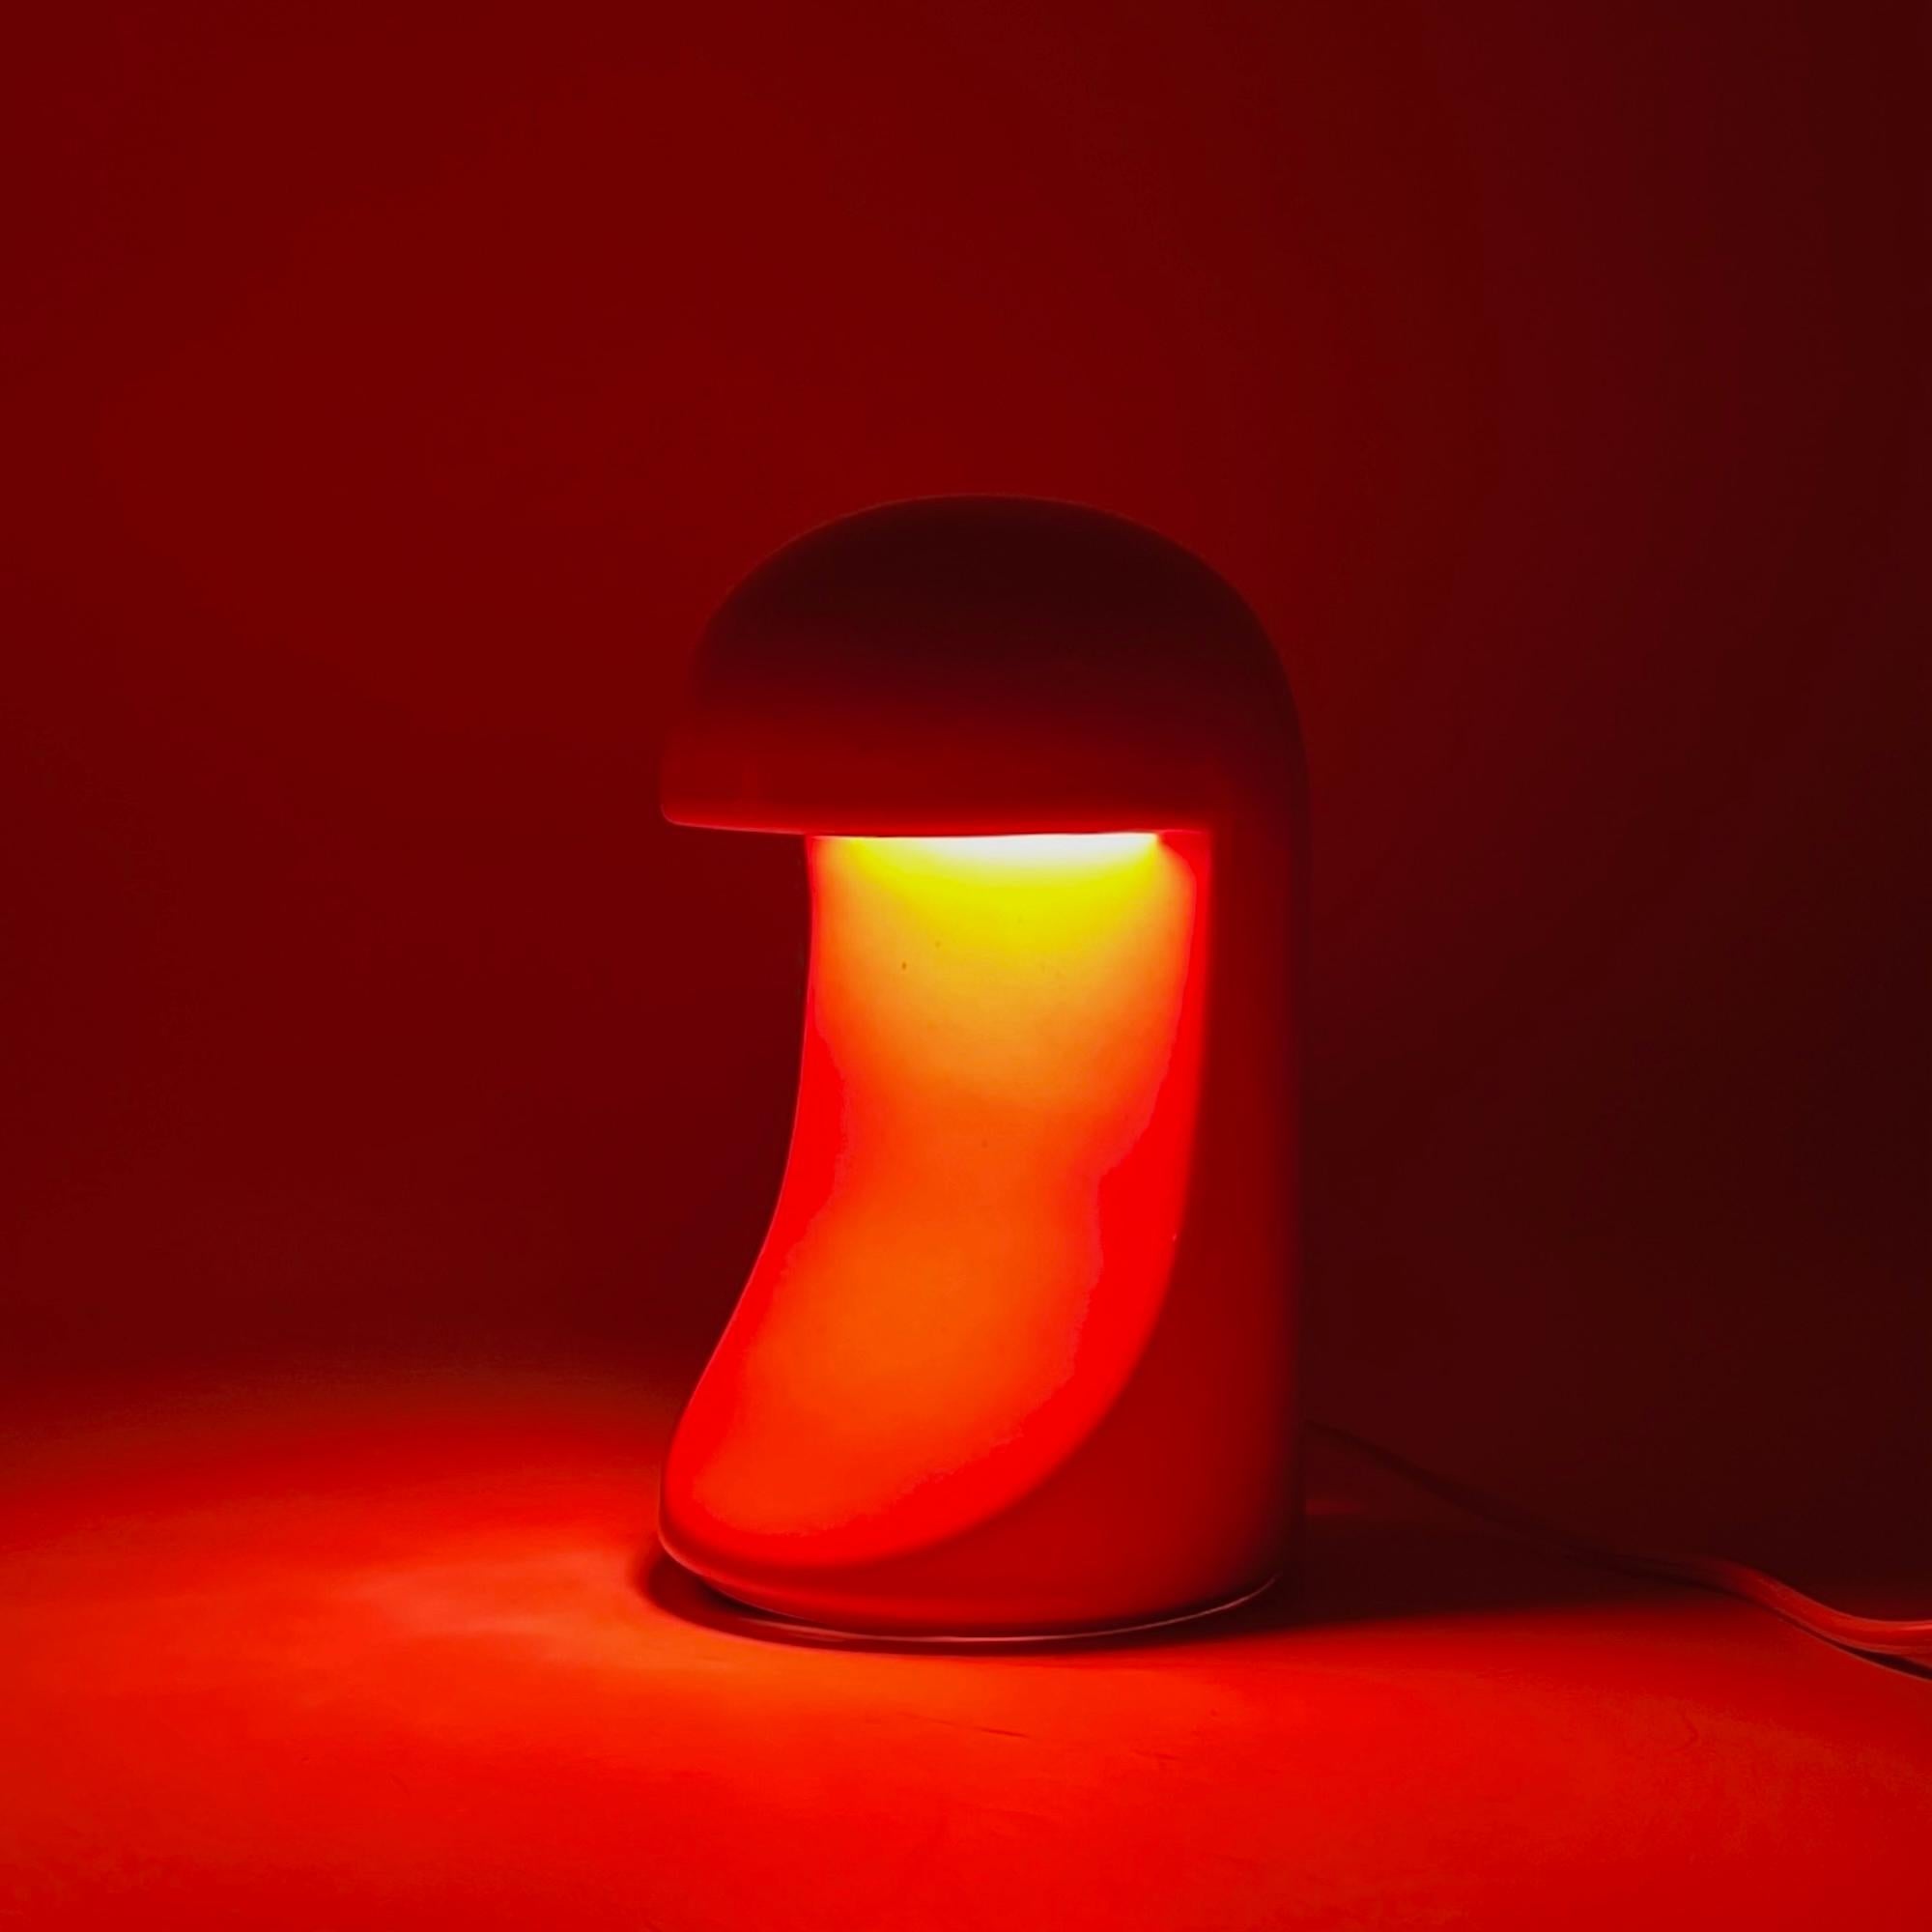 Longobarda est une lampe innovante composée d'un seul corps en céramique, conçue bin 1966.

Replongez dans l'ère élégante des années 60 avec l'emblématique lampe 